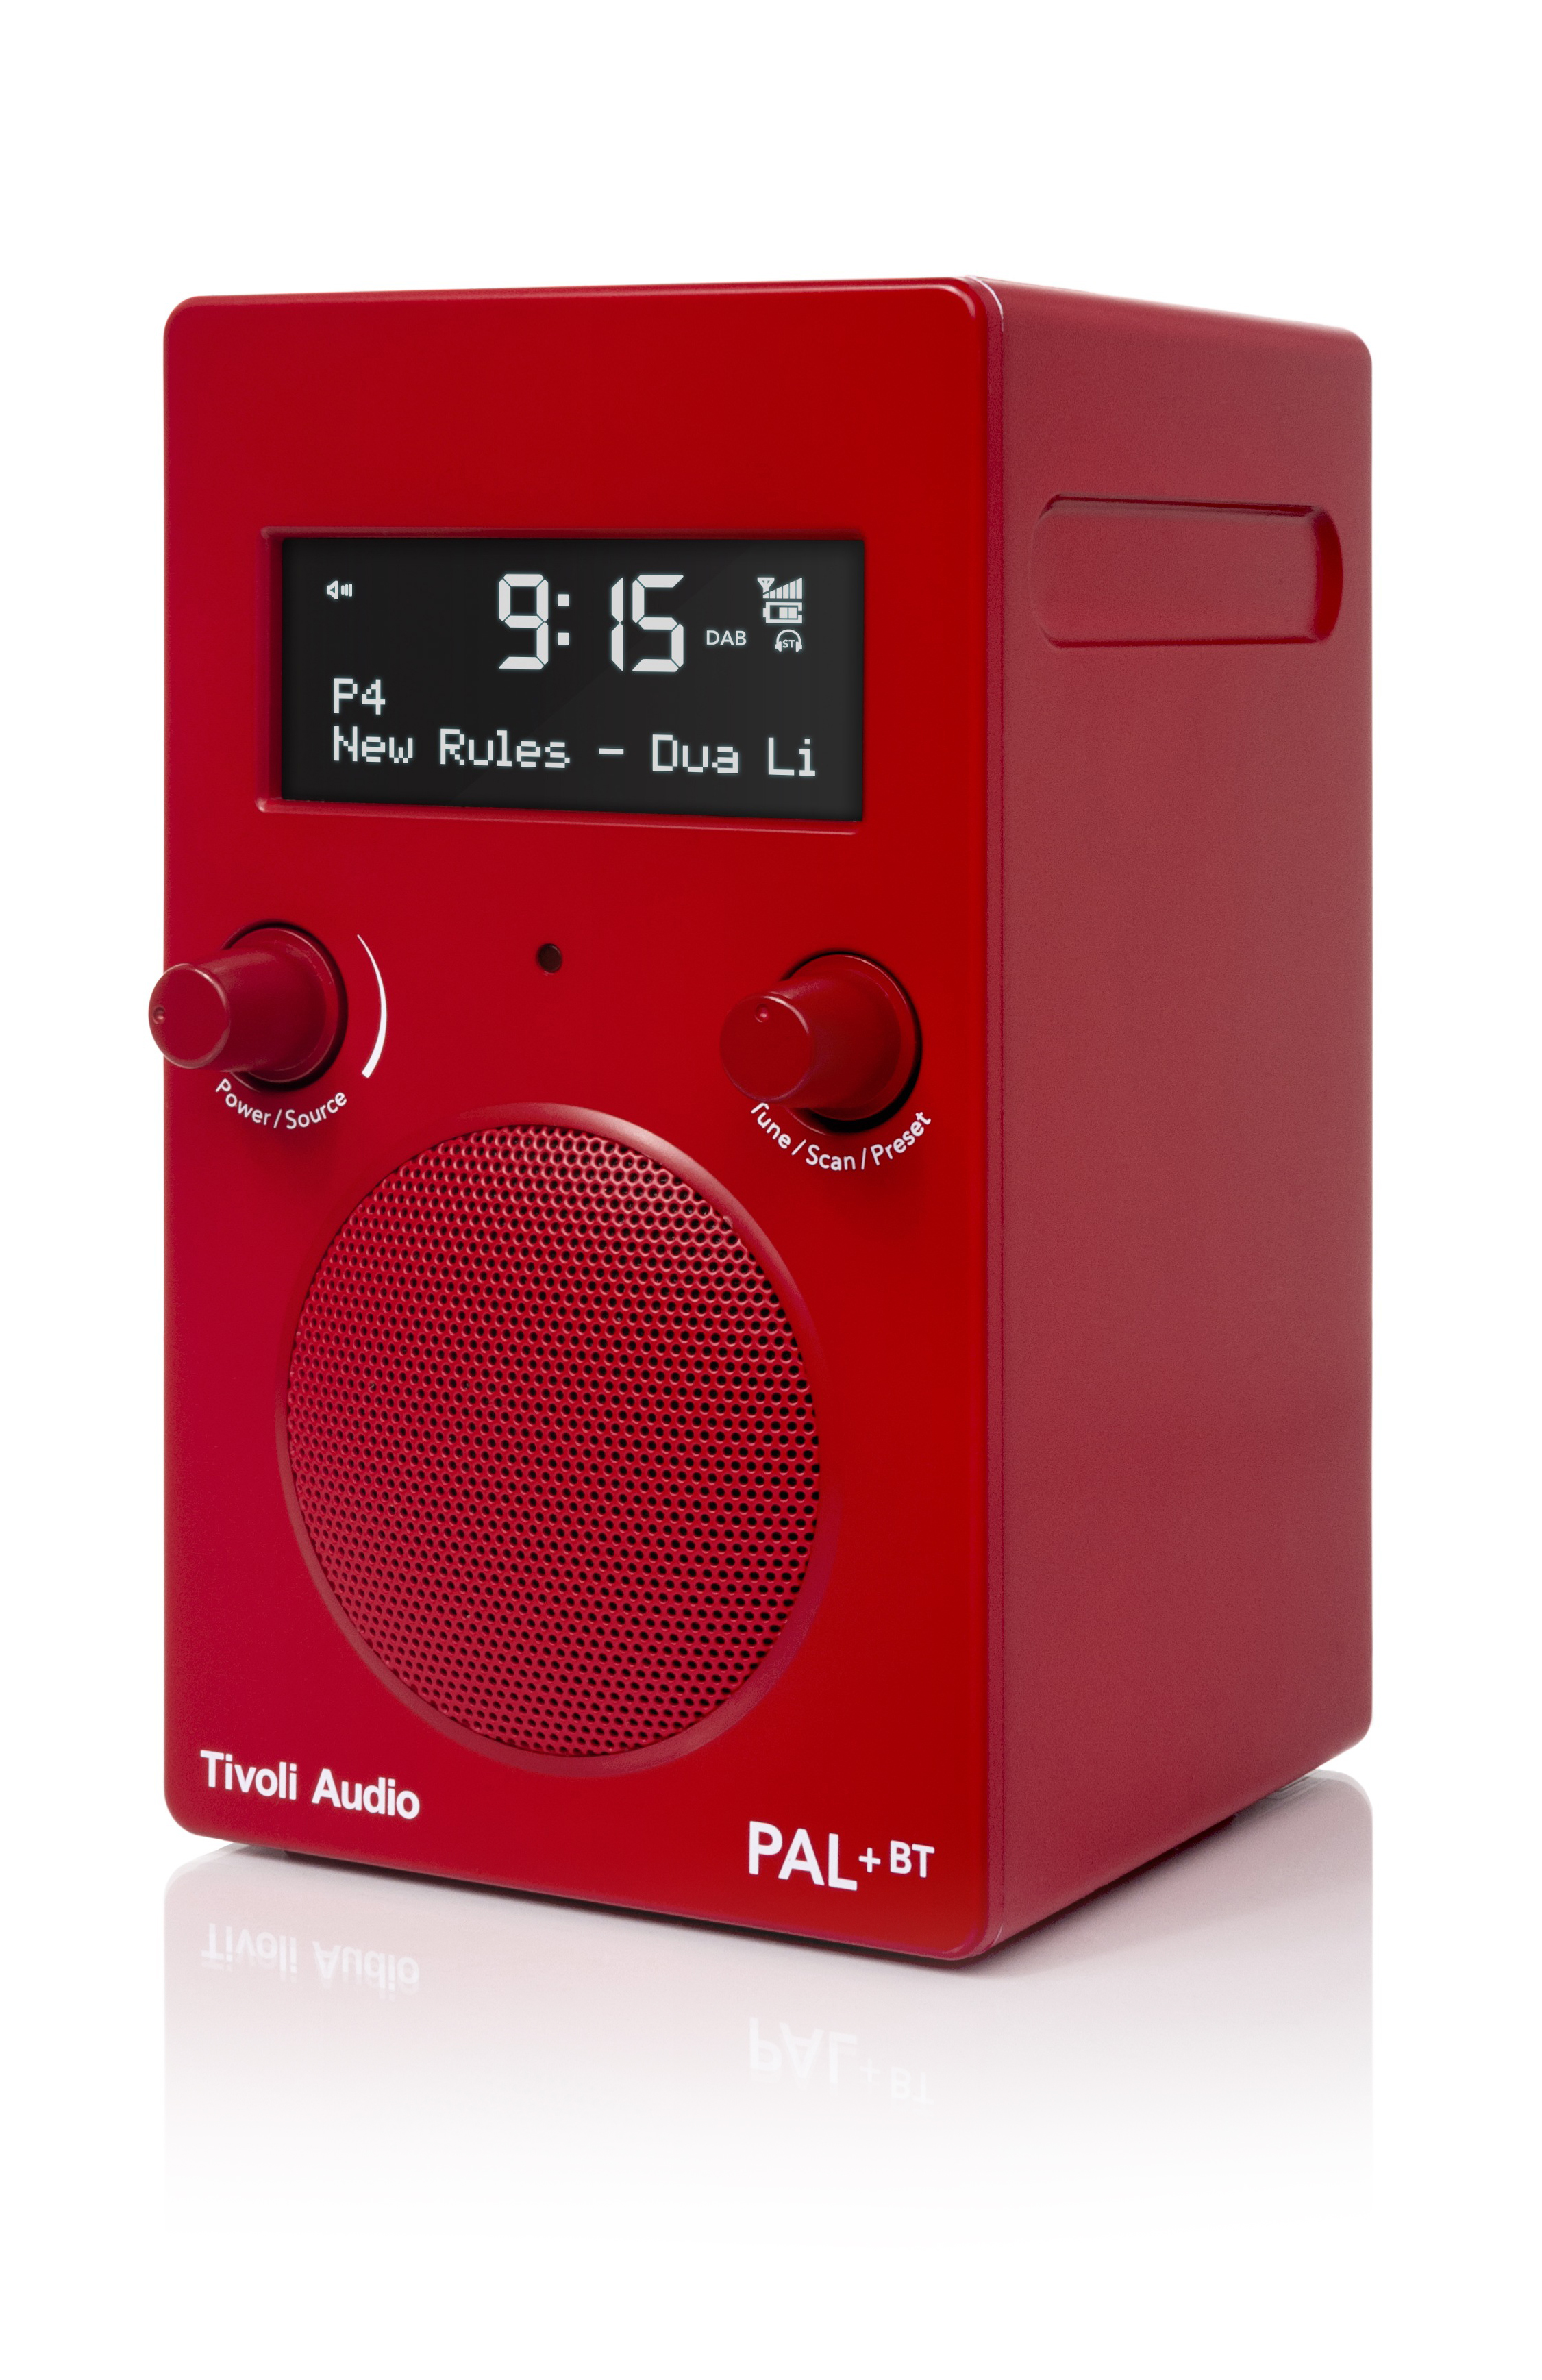 TIVOLI AUDIO DAB+, Radio, Bluetooth, BT DAB+ PAL+ DAB+, FM, Rot